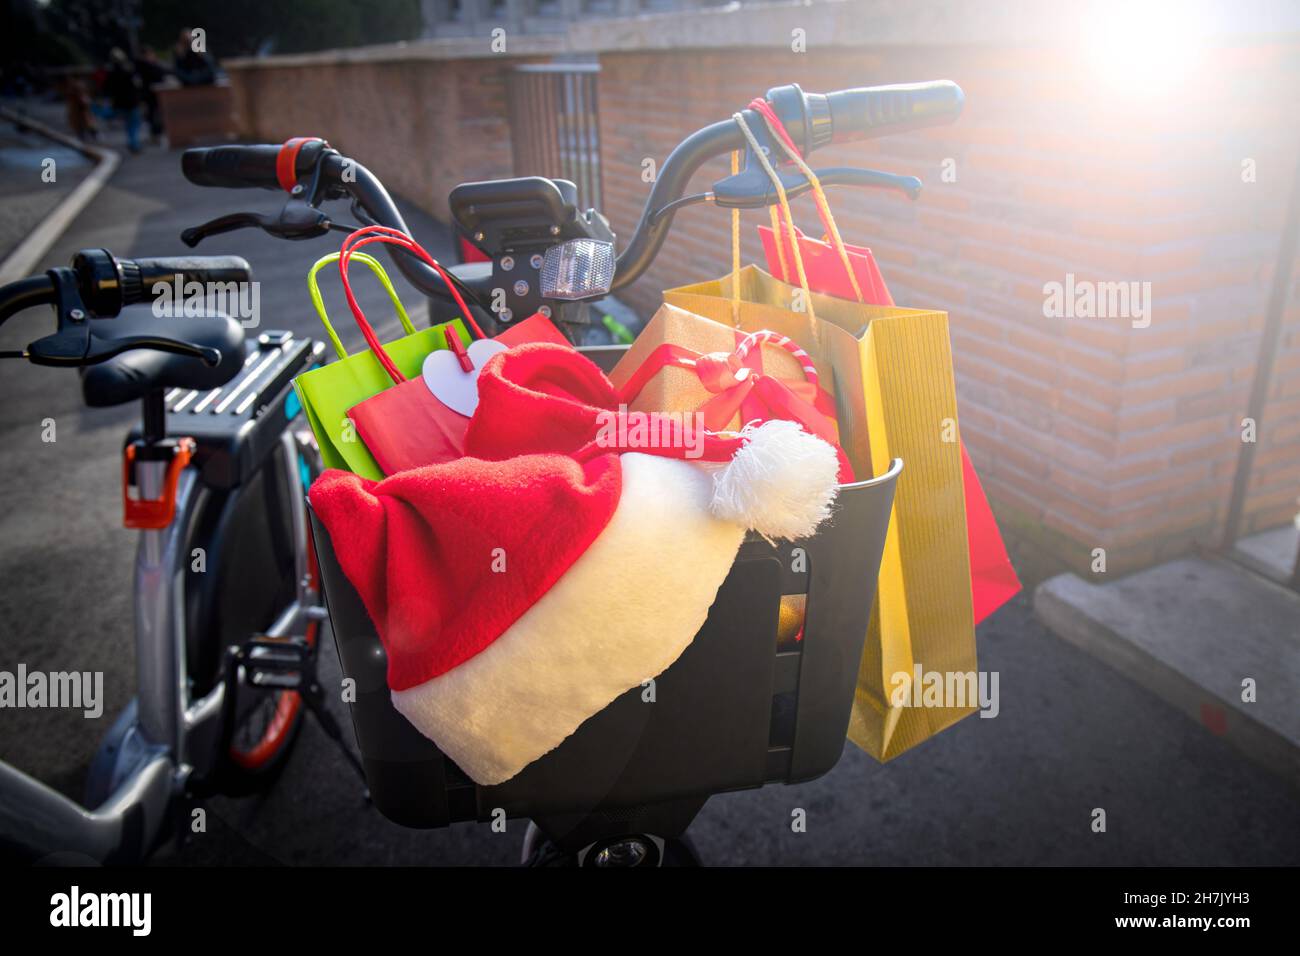 Shopping de Noël.Panier à vélo plein de cadeaux de Noël et de sacs cabas colorés.Chapeau du Père Noël reposant sur les cadeaux. Banque D'Images